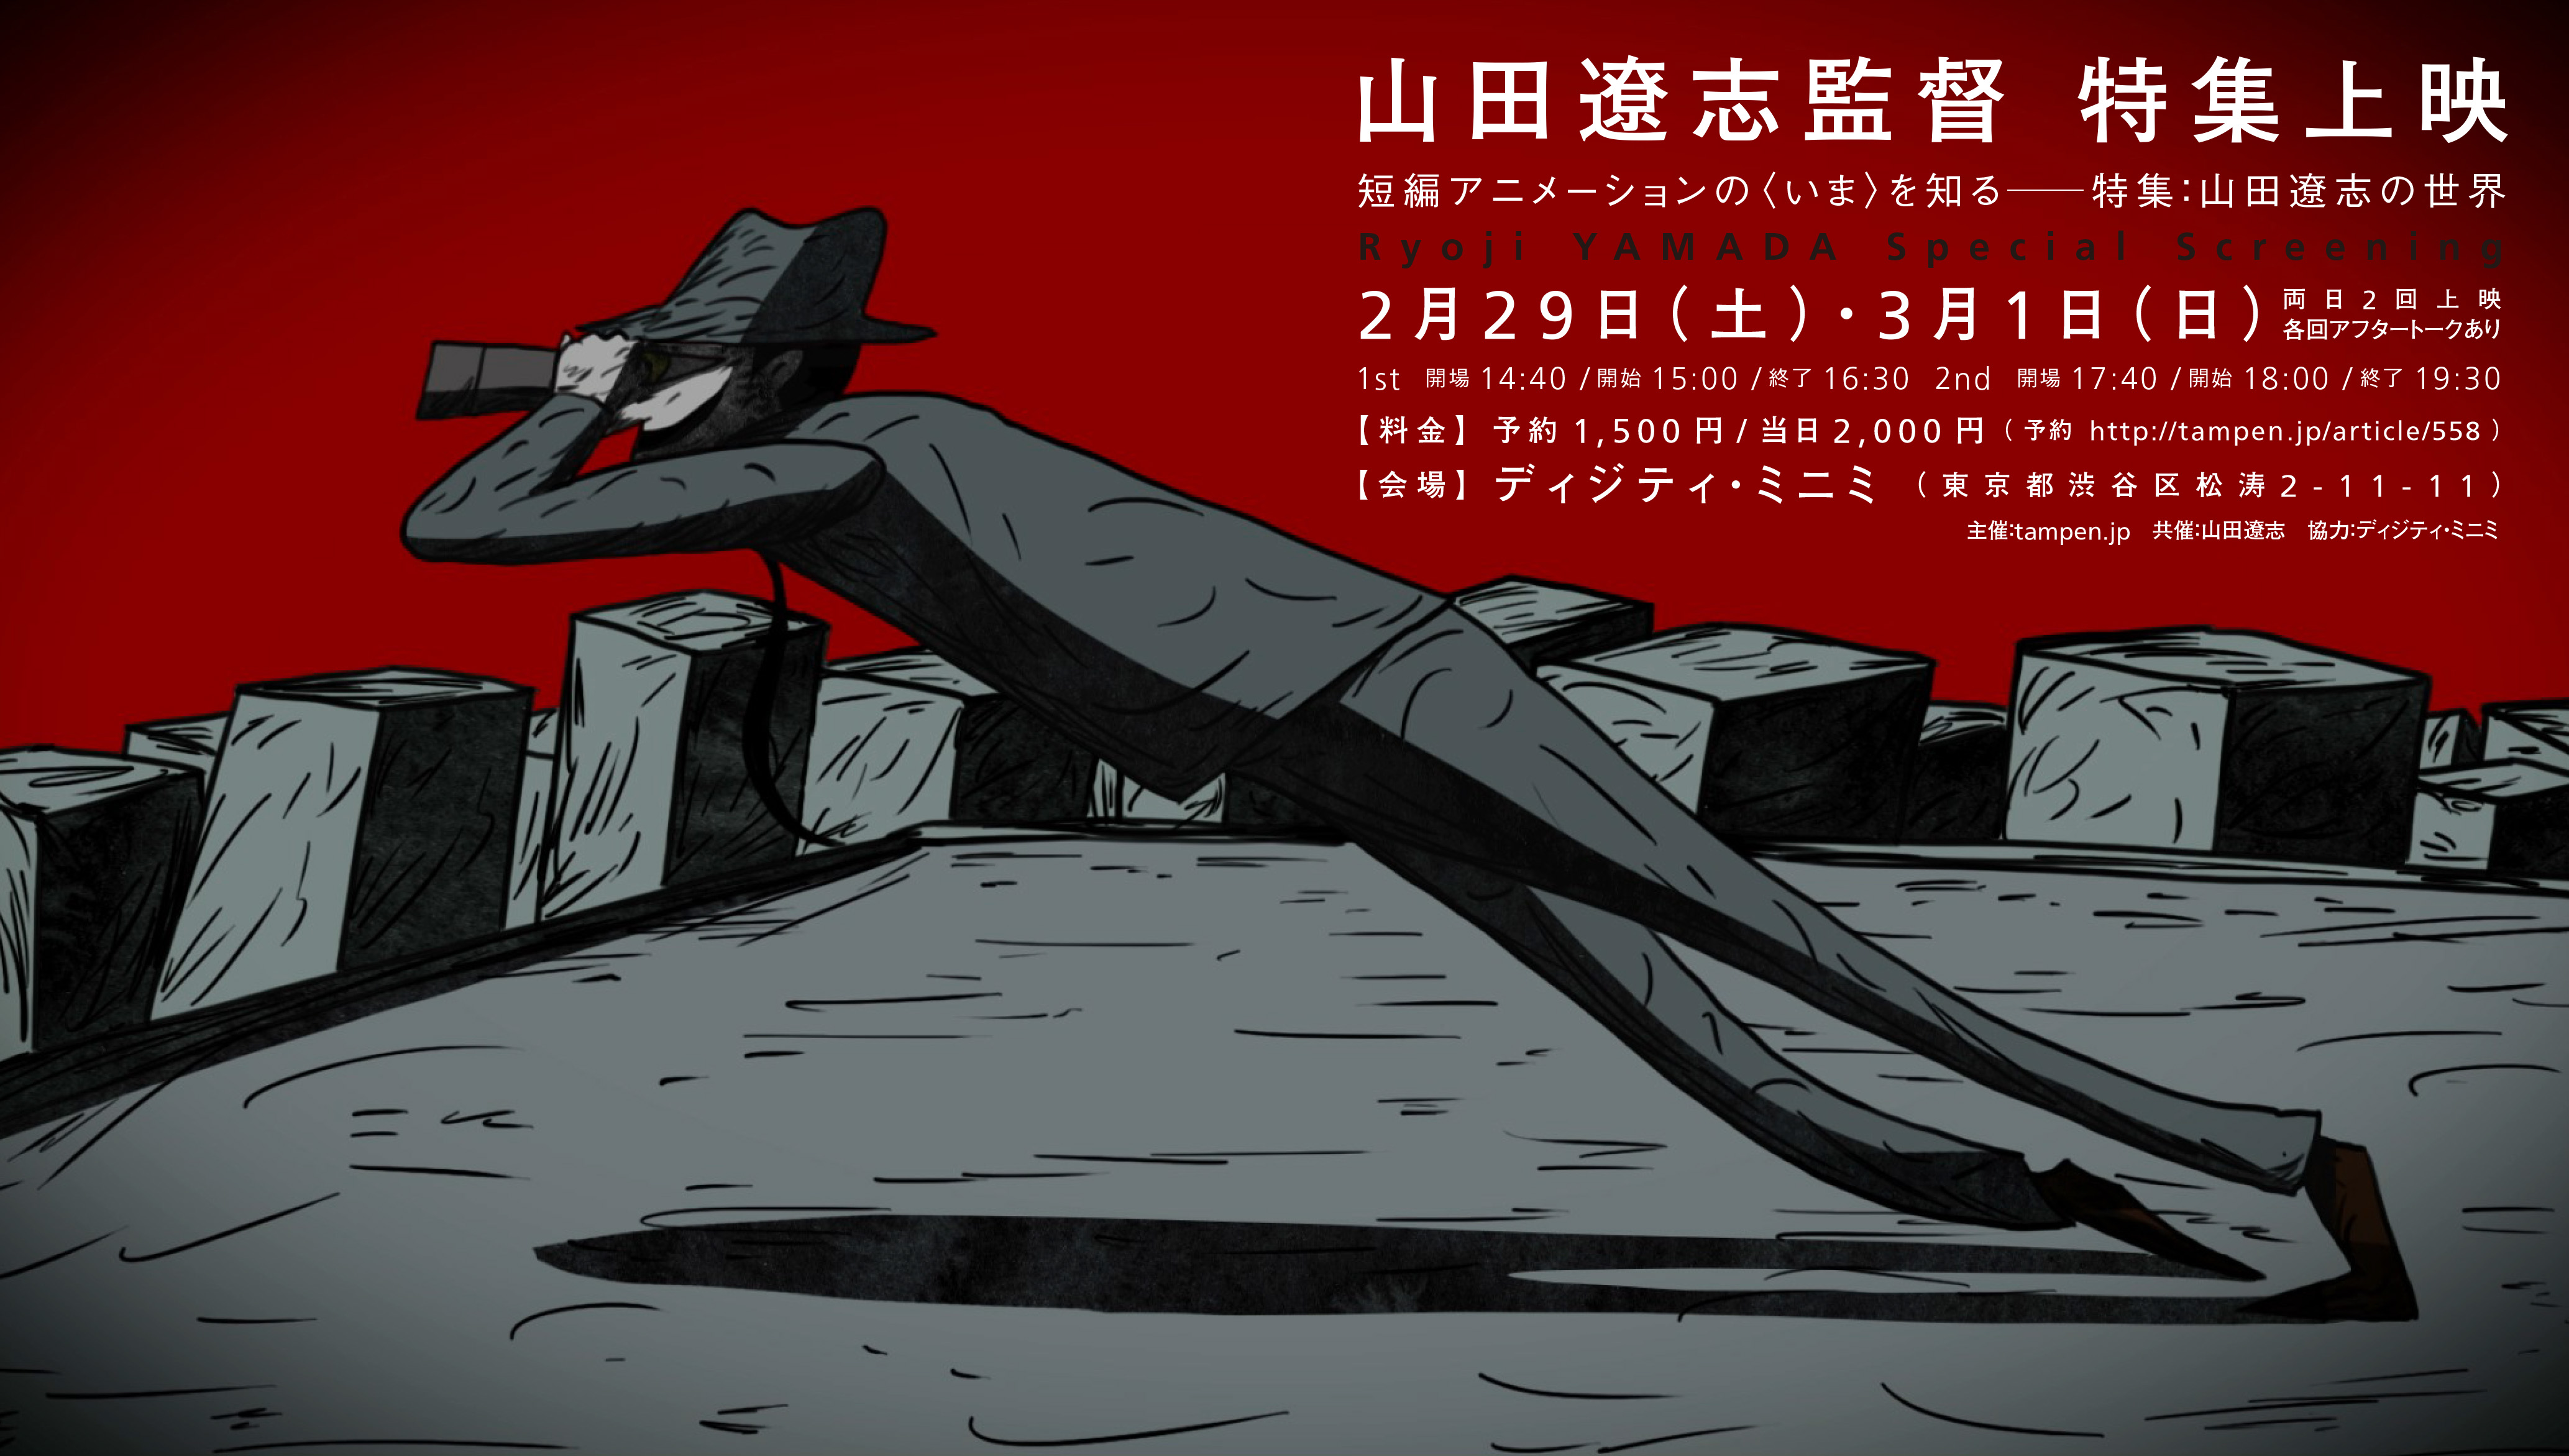 【告知】tampen.jp主催上映「短編アニメーションの〈いま〉を知る——特集:山田遼志の世界」開催